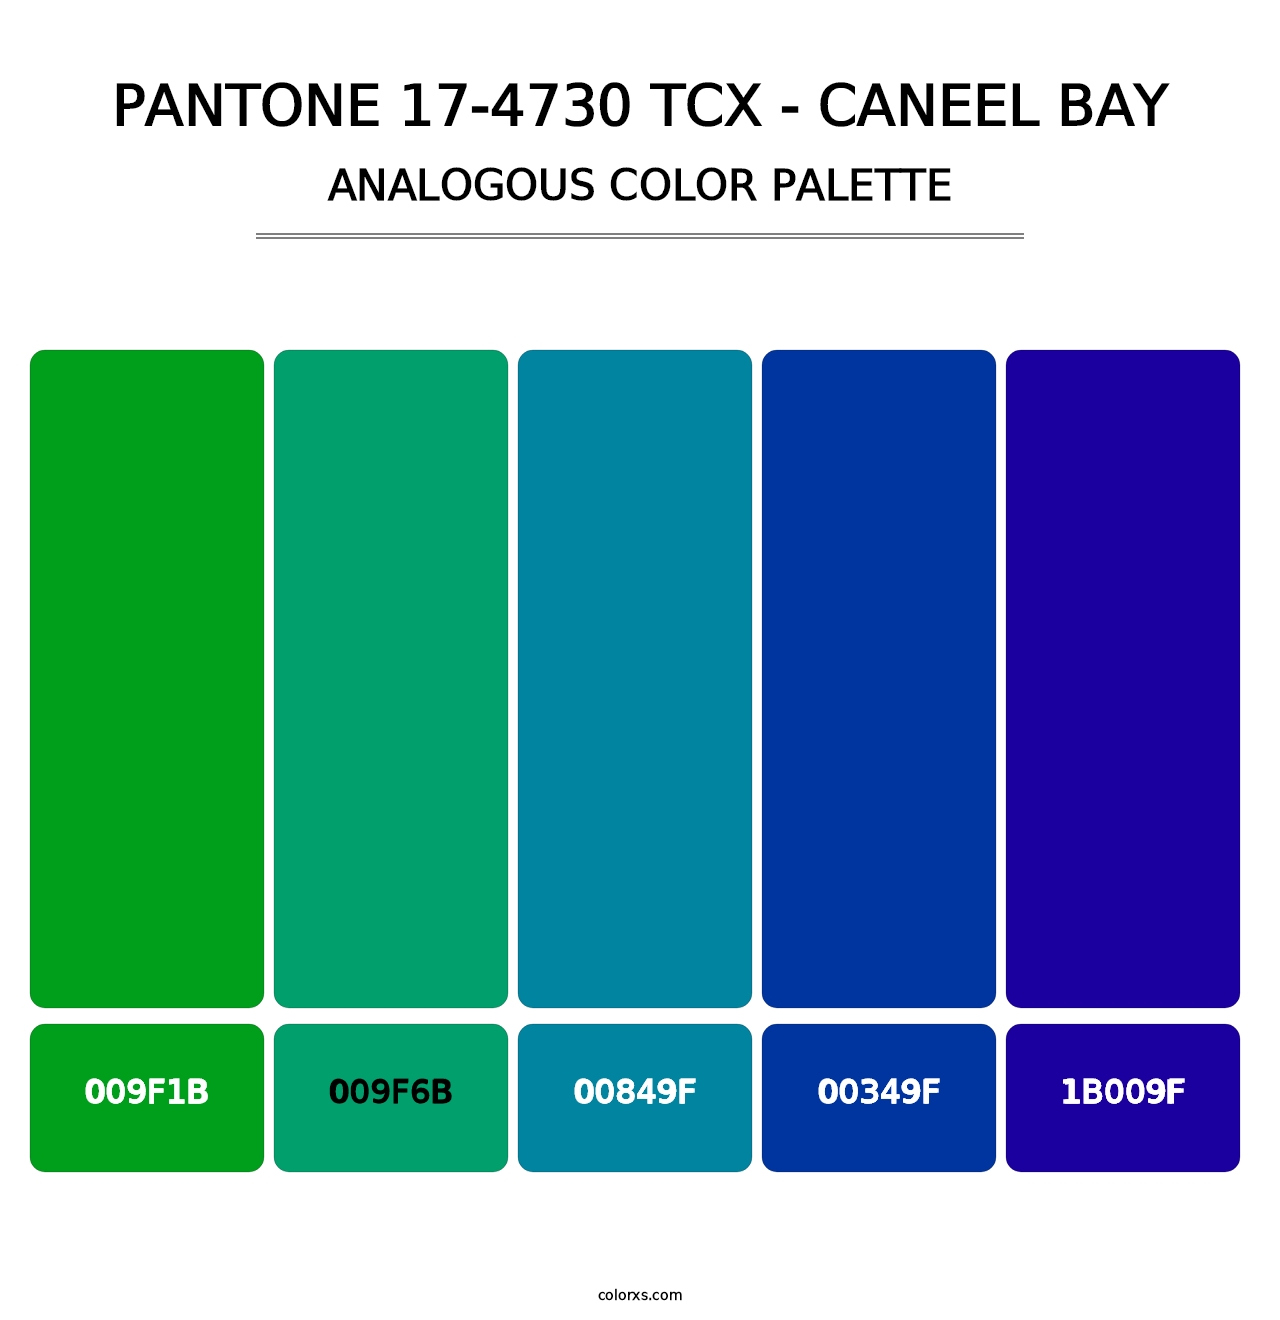 PANTONE 17-4730 TCX - Caneel Bay - Analogous Color Palette